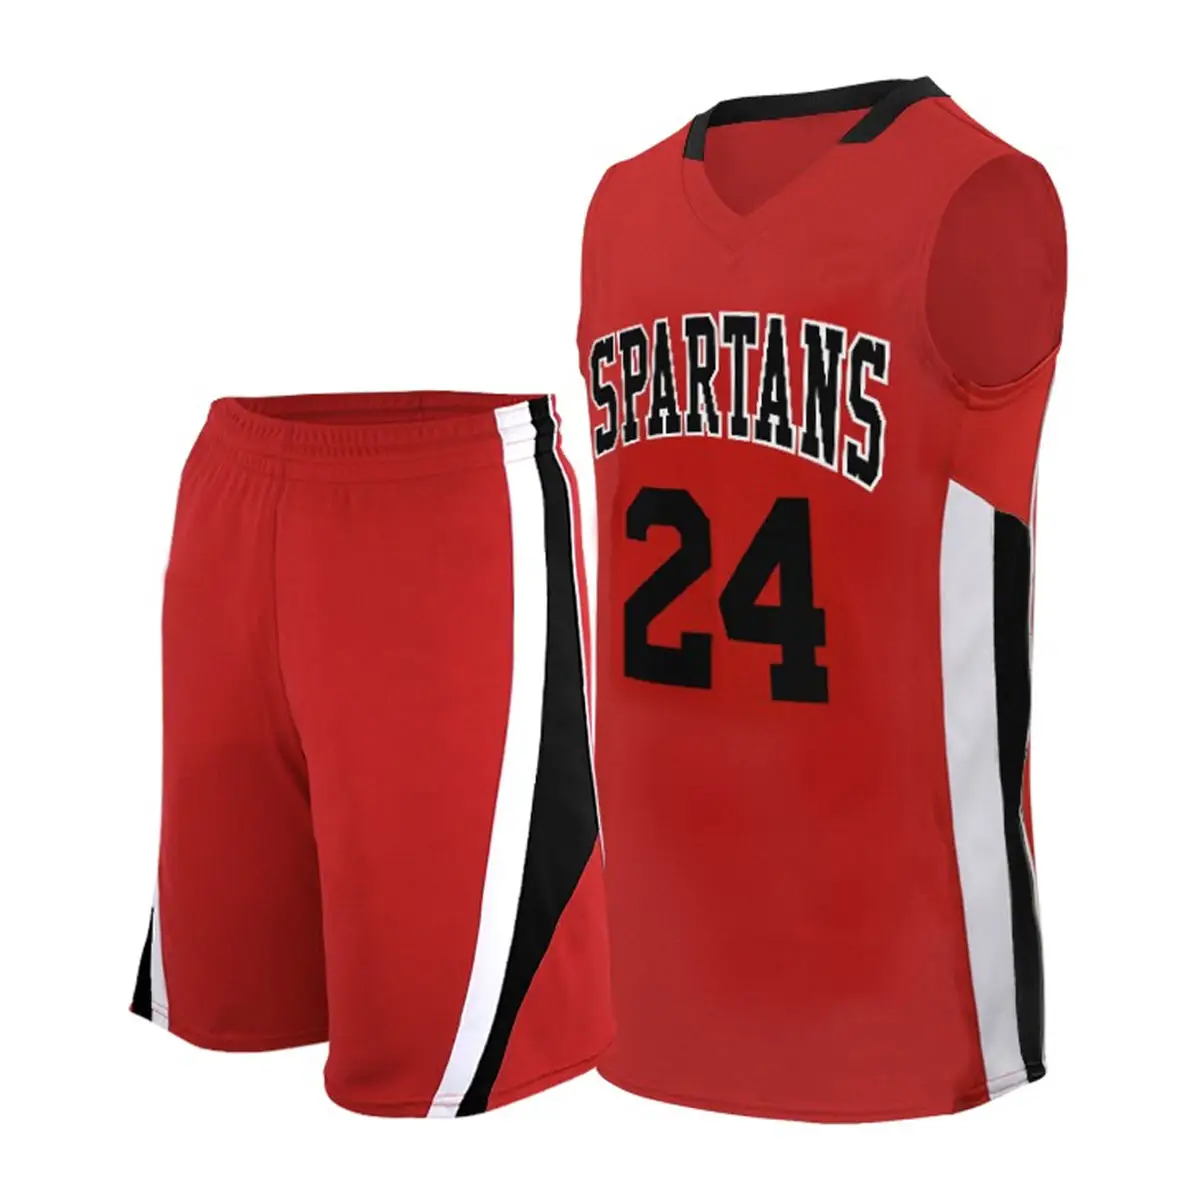 Özel en trend son tarzı kolsuz erkekler basketbol üniforması profesyonel özel basketbol üniforması basketbol üniforması